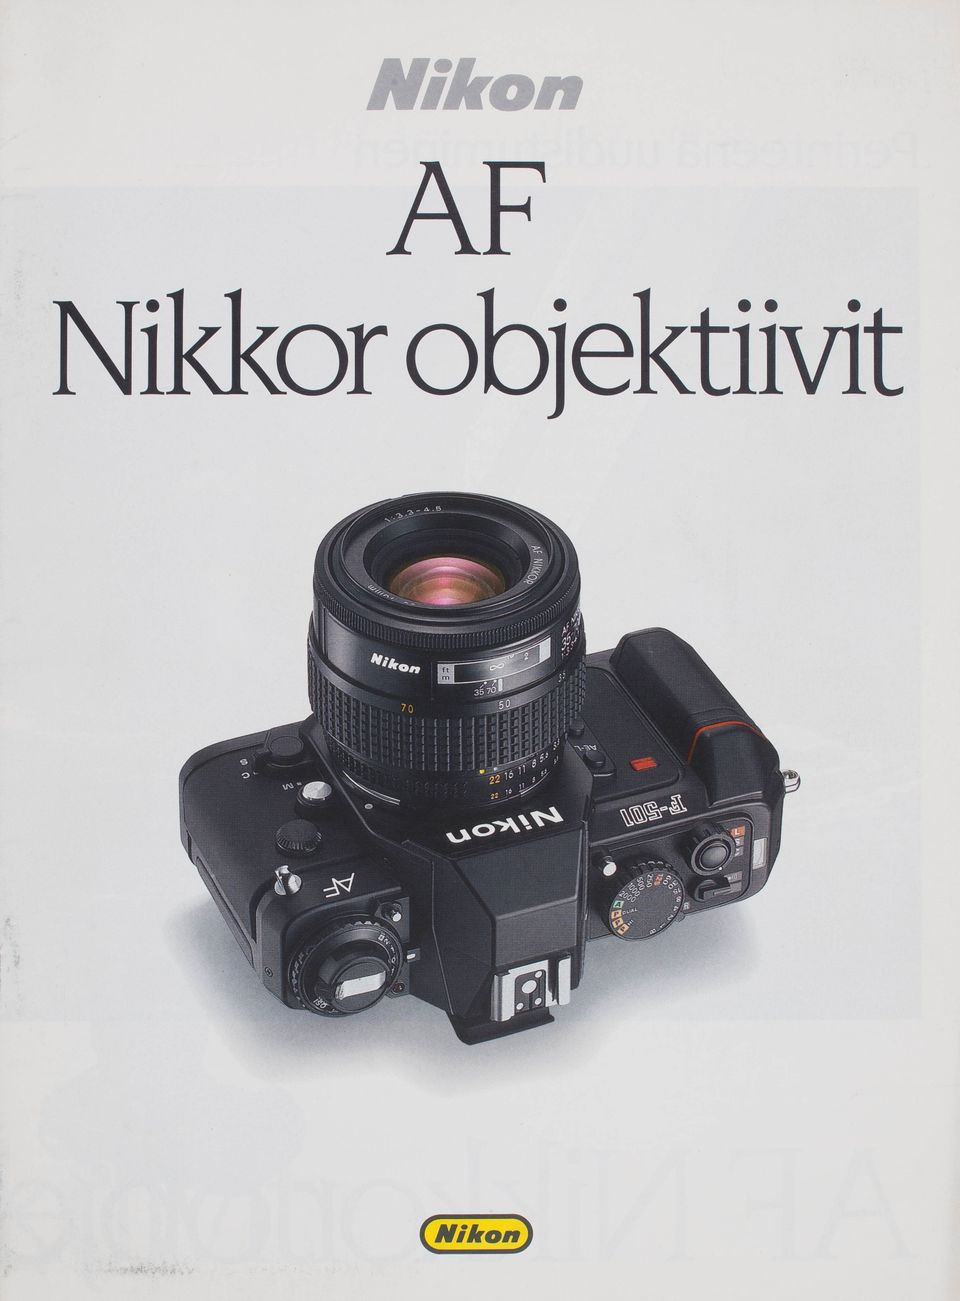 Nikon AF Nikkor objektiivit